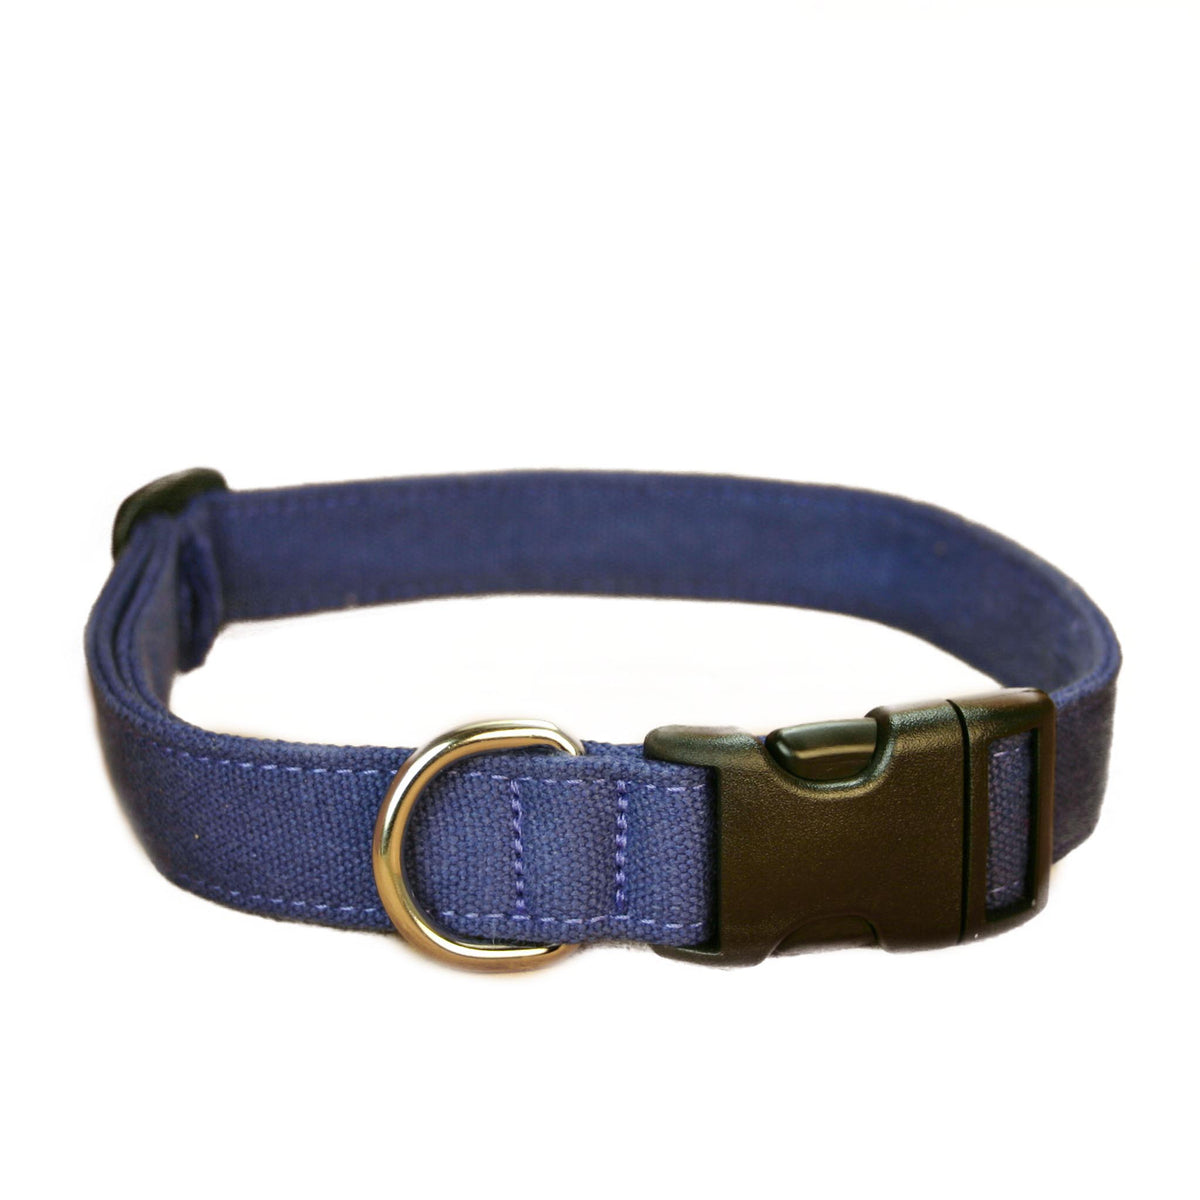 Hemp Dog Collar Basic Blue | The Good Dog Company